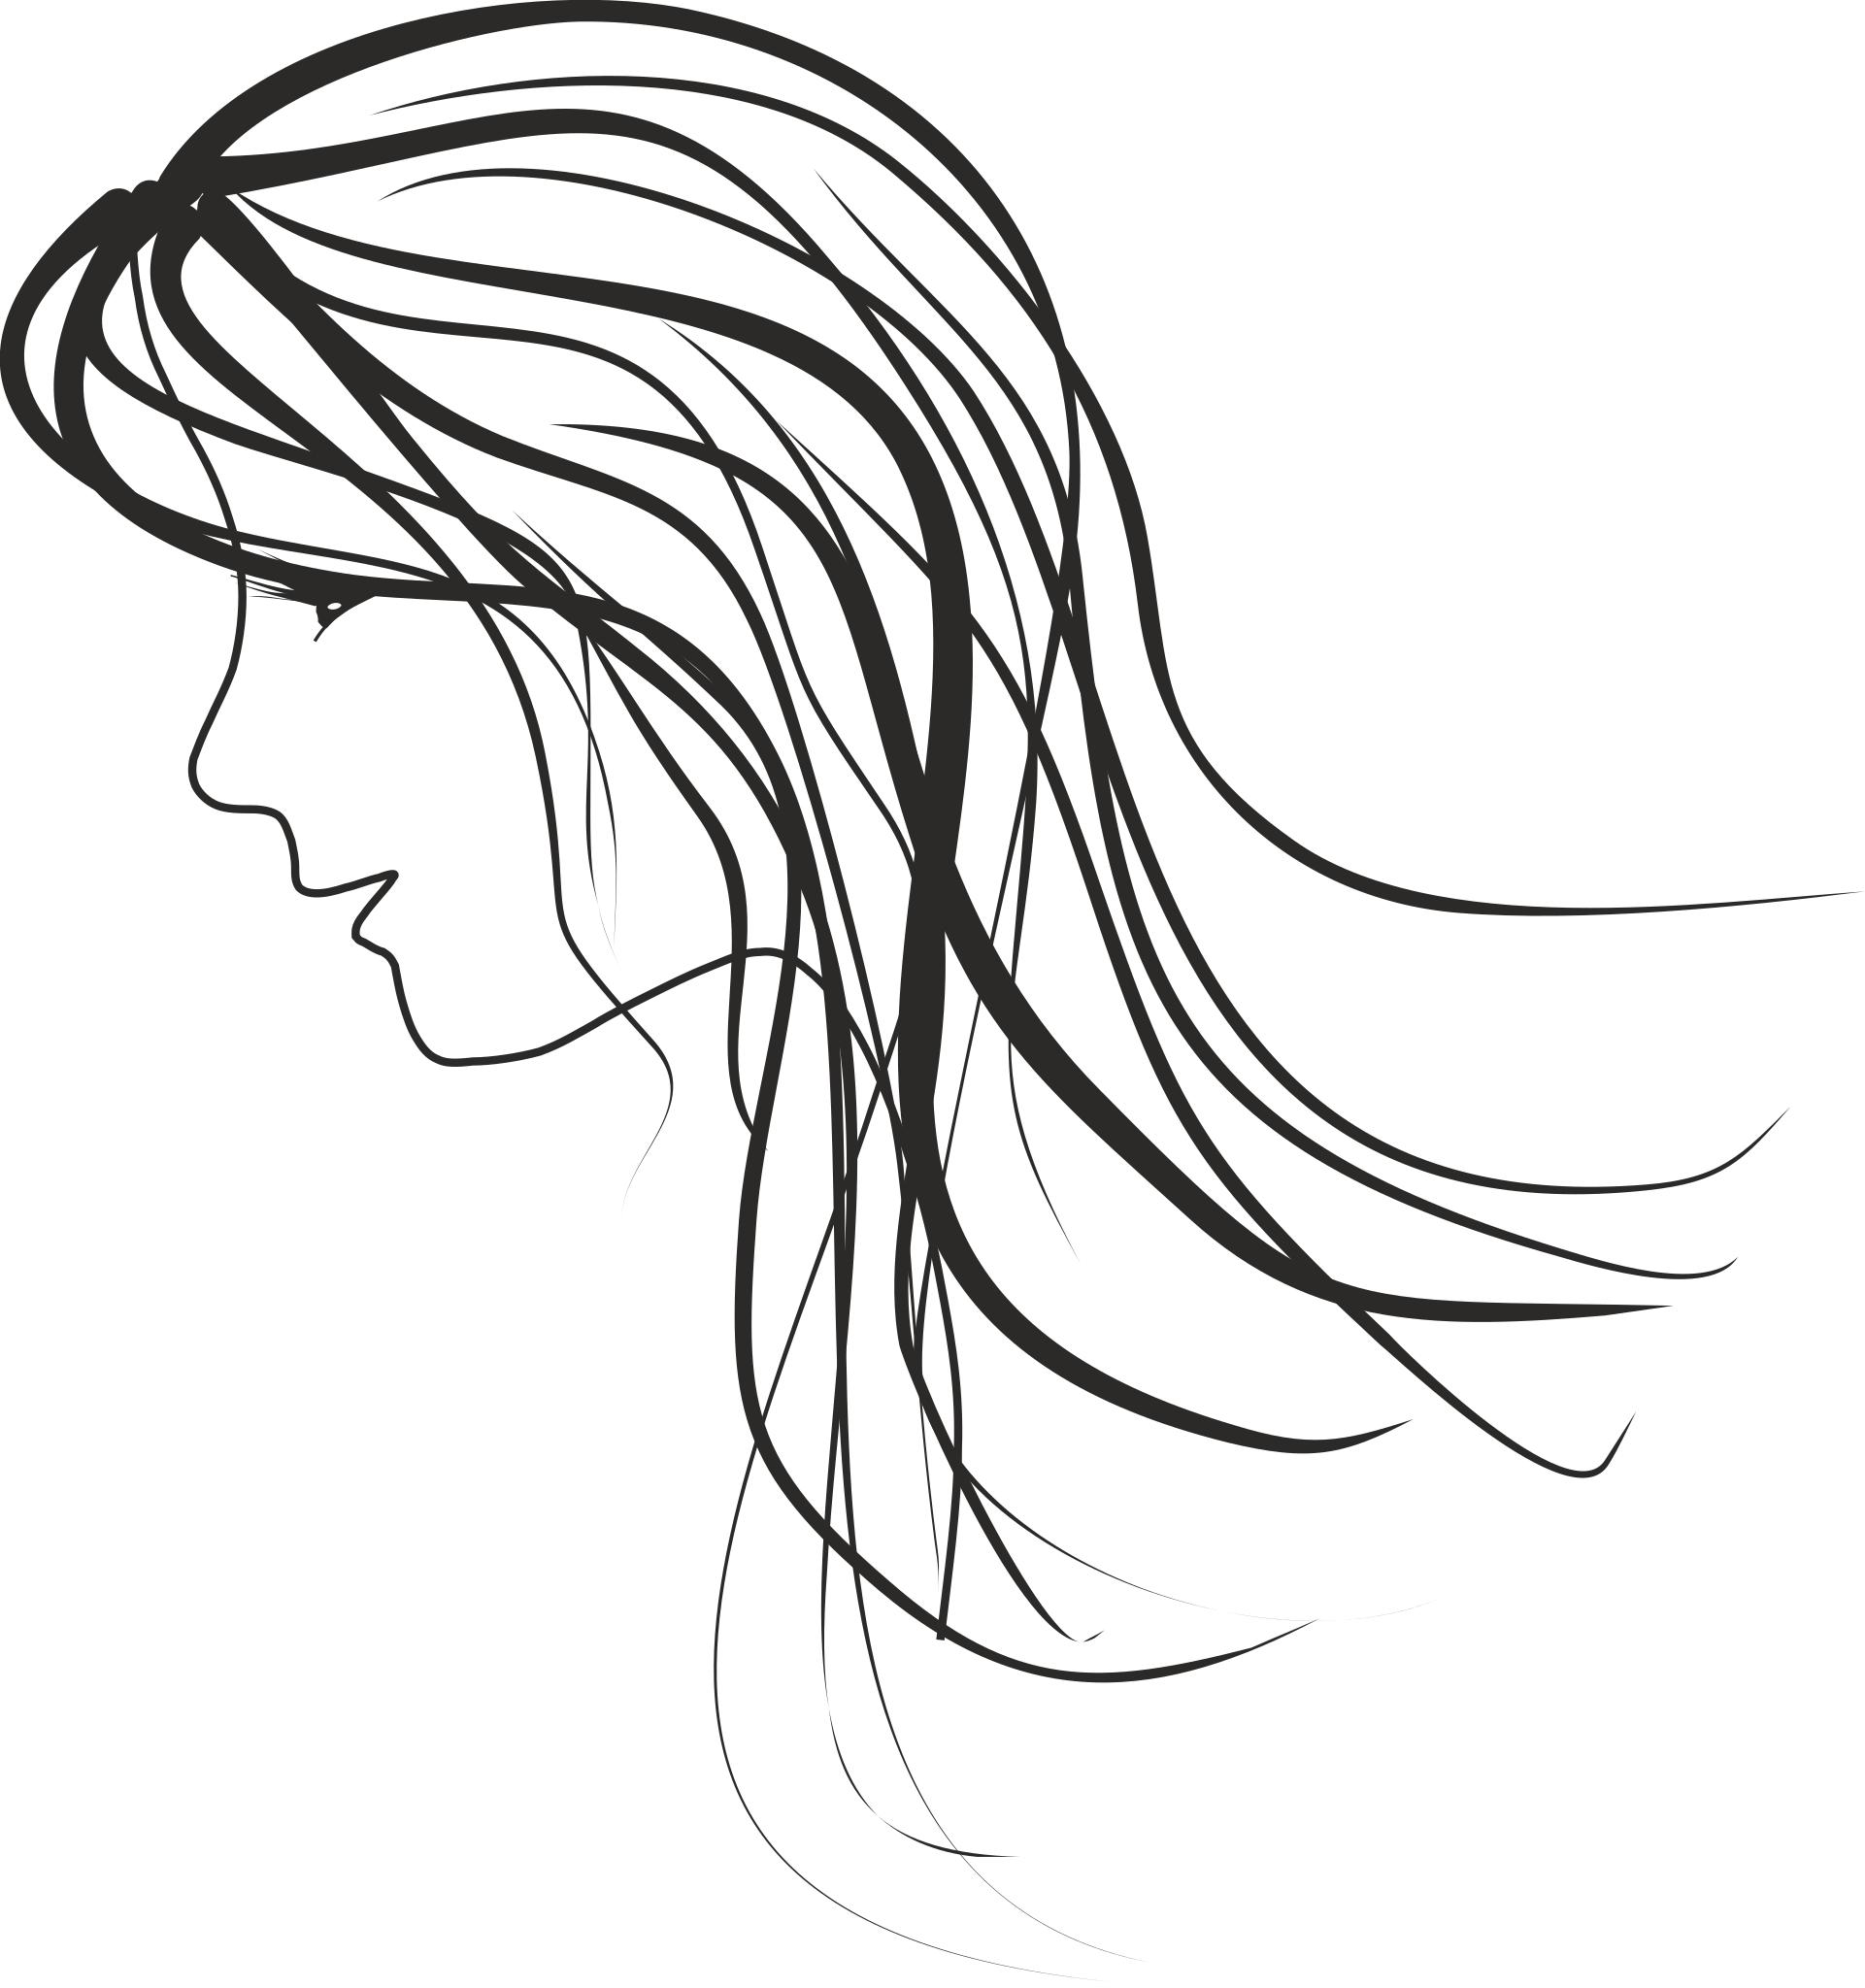 Контур женской головы с волосами